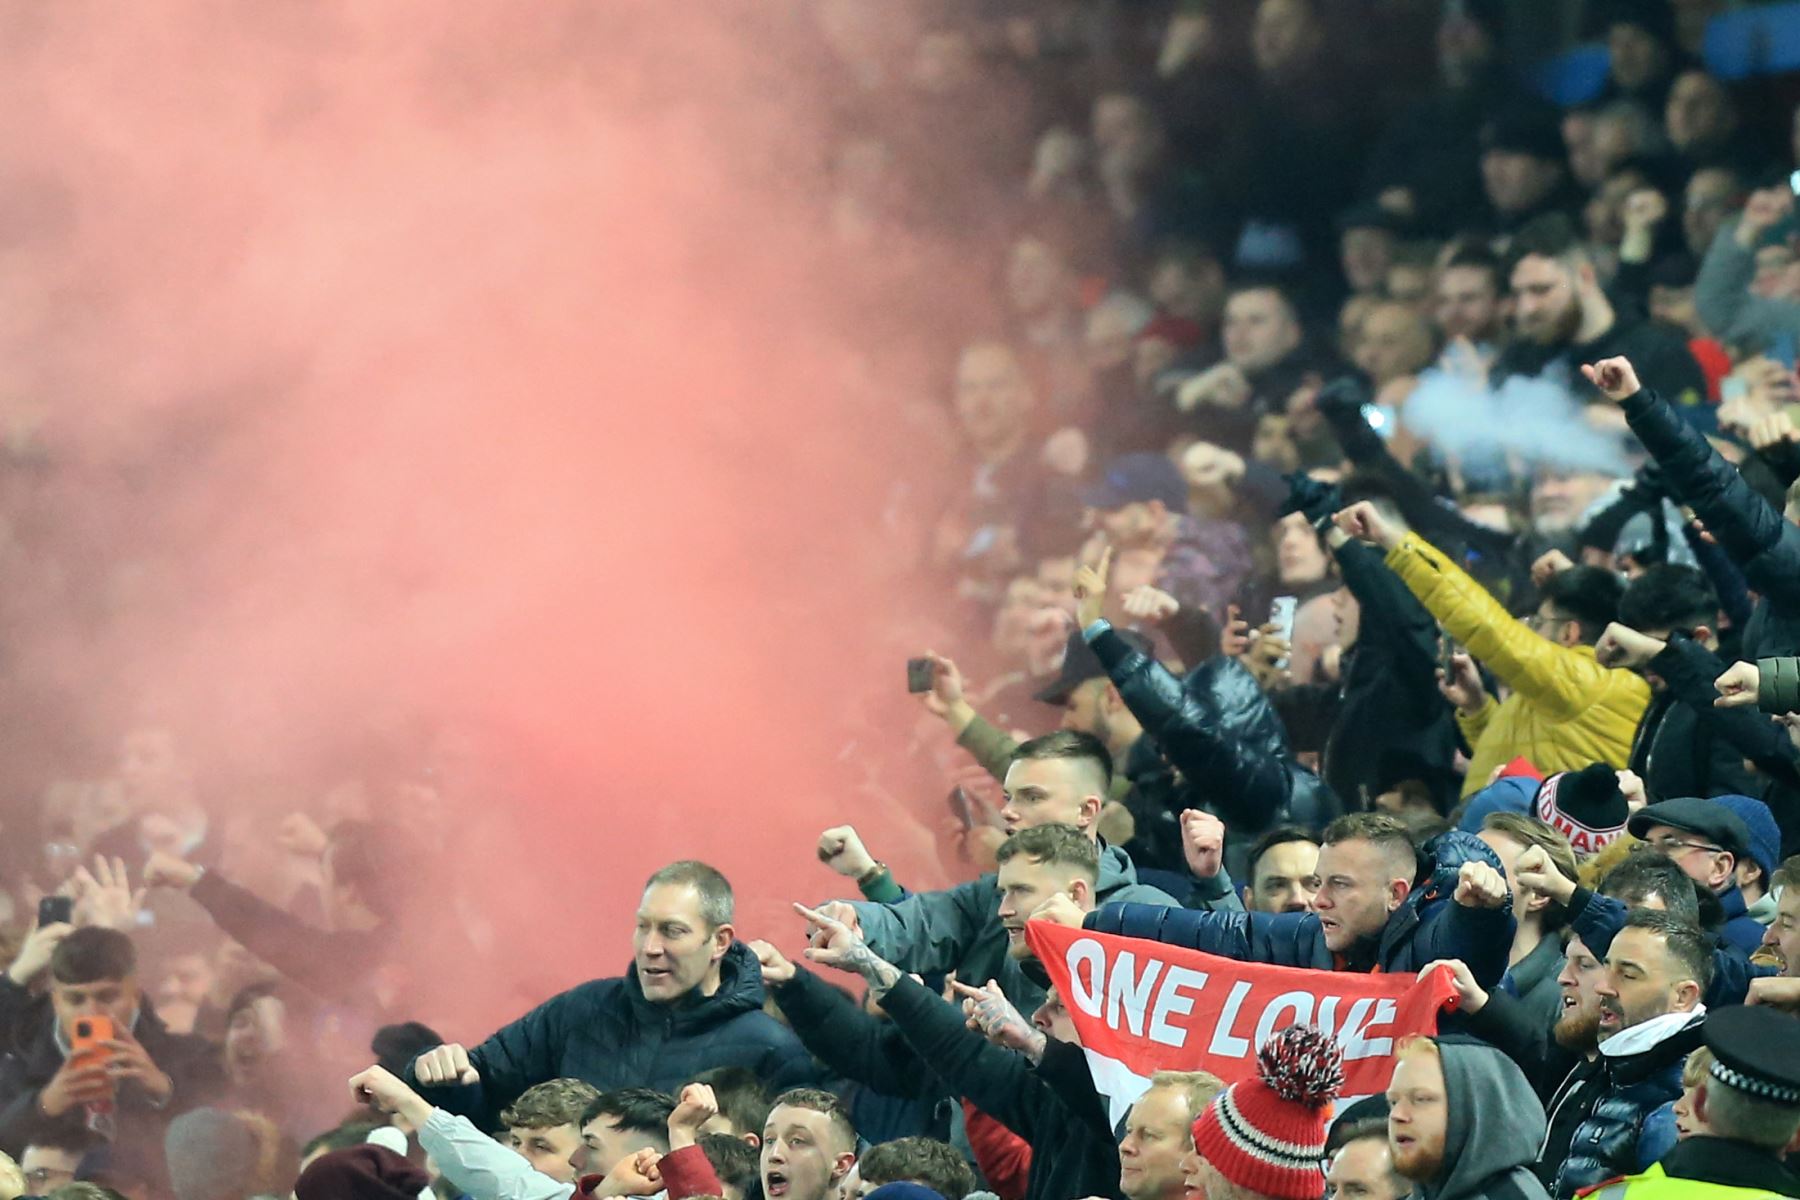 Los fanáticos del Manchester United celebran el primer gol de su equipo durante el partido frente al Aston Villa por la Premier League.
Foto: AFP